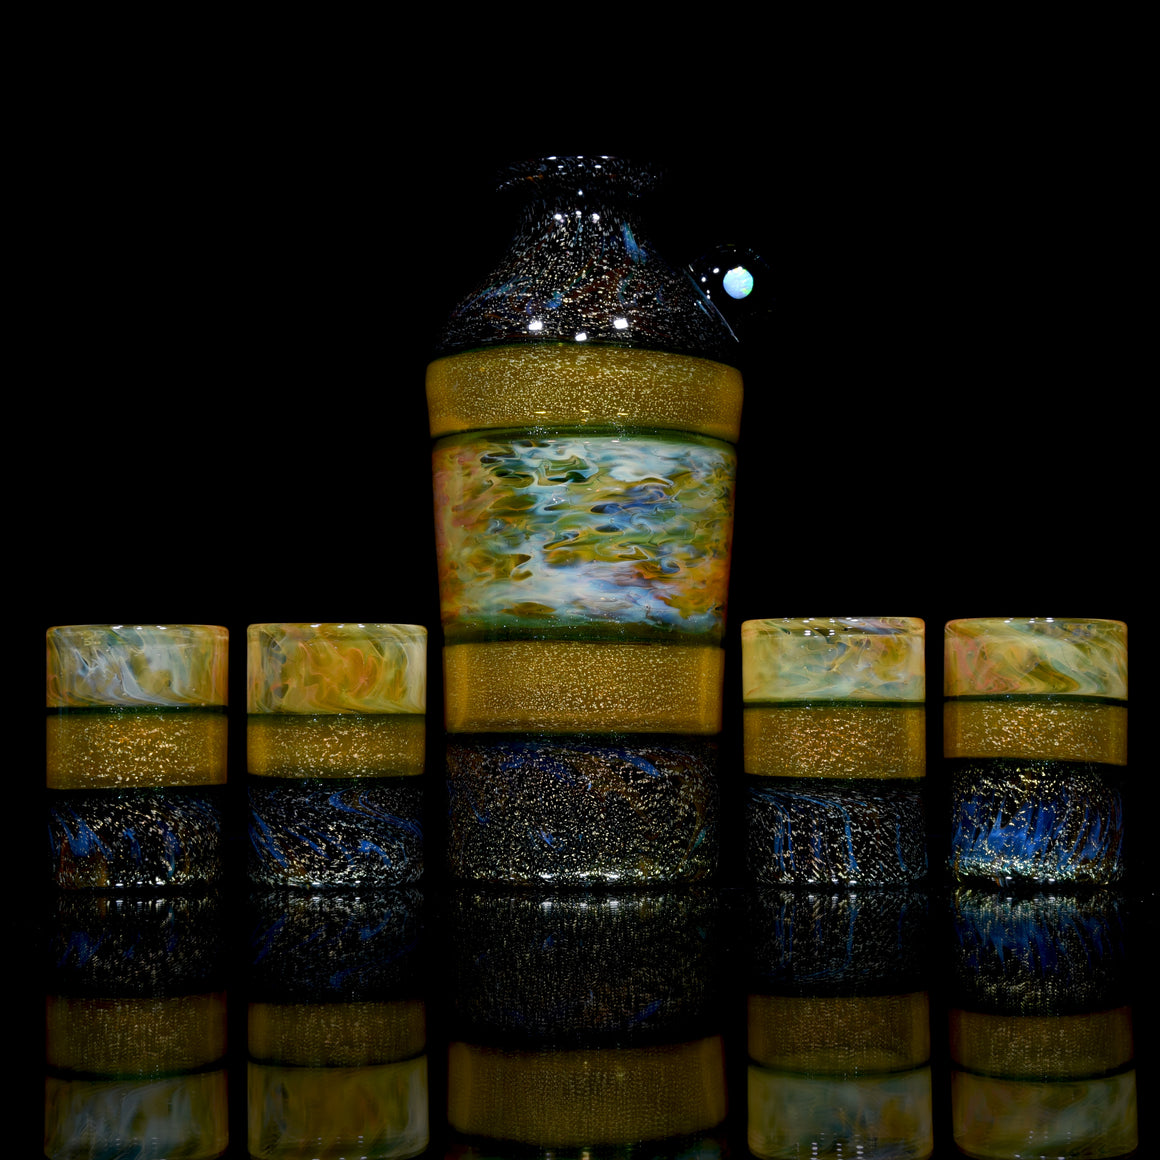 5-piece Dichroic Sake Set w/ Opal - Green/Orange/Multilayer Fume